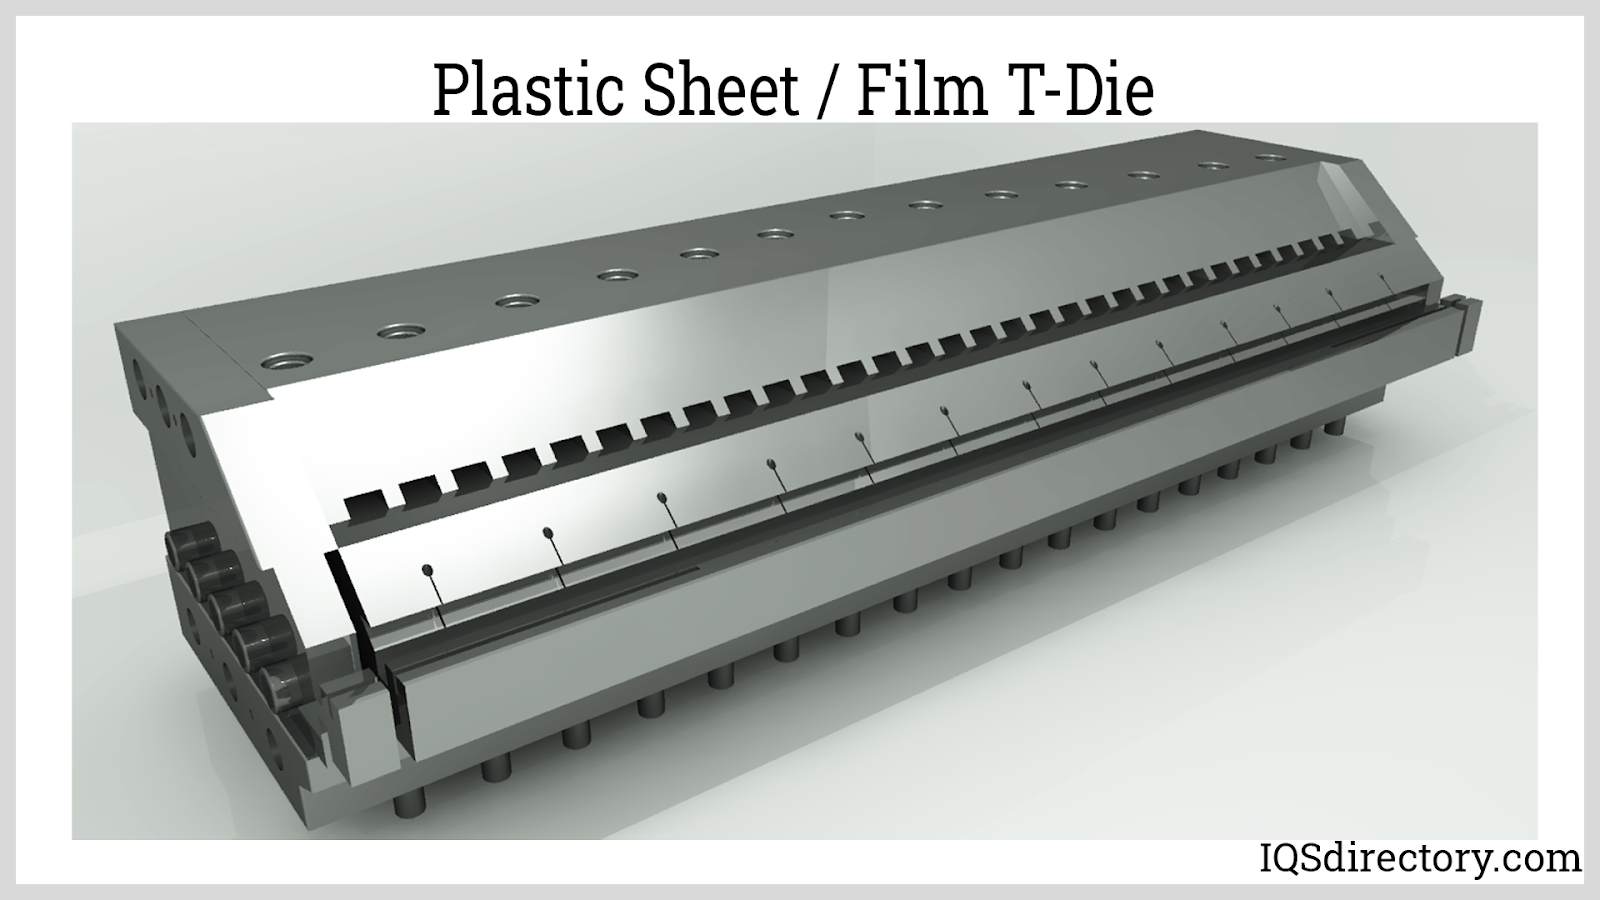 Plastic Sheet / Film T-Die